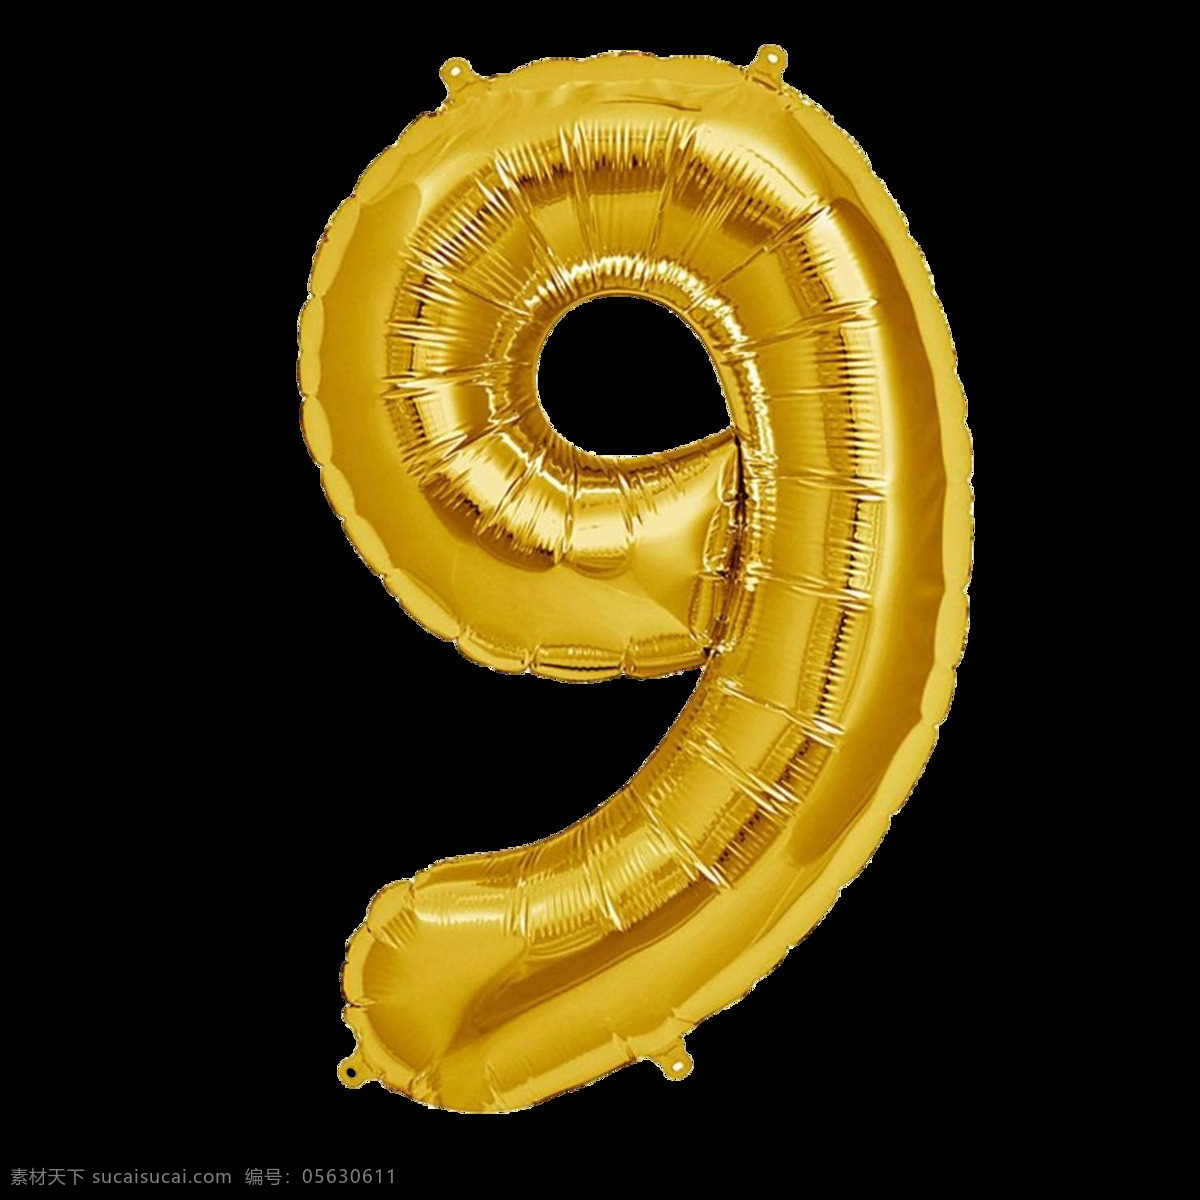 金色气球字9 金色气球字 气球字 气球数字 铝膜气球字母 装饰字 派对气球 气球文字 字母气球 铝箔气球 3d设计 3d作品